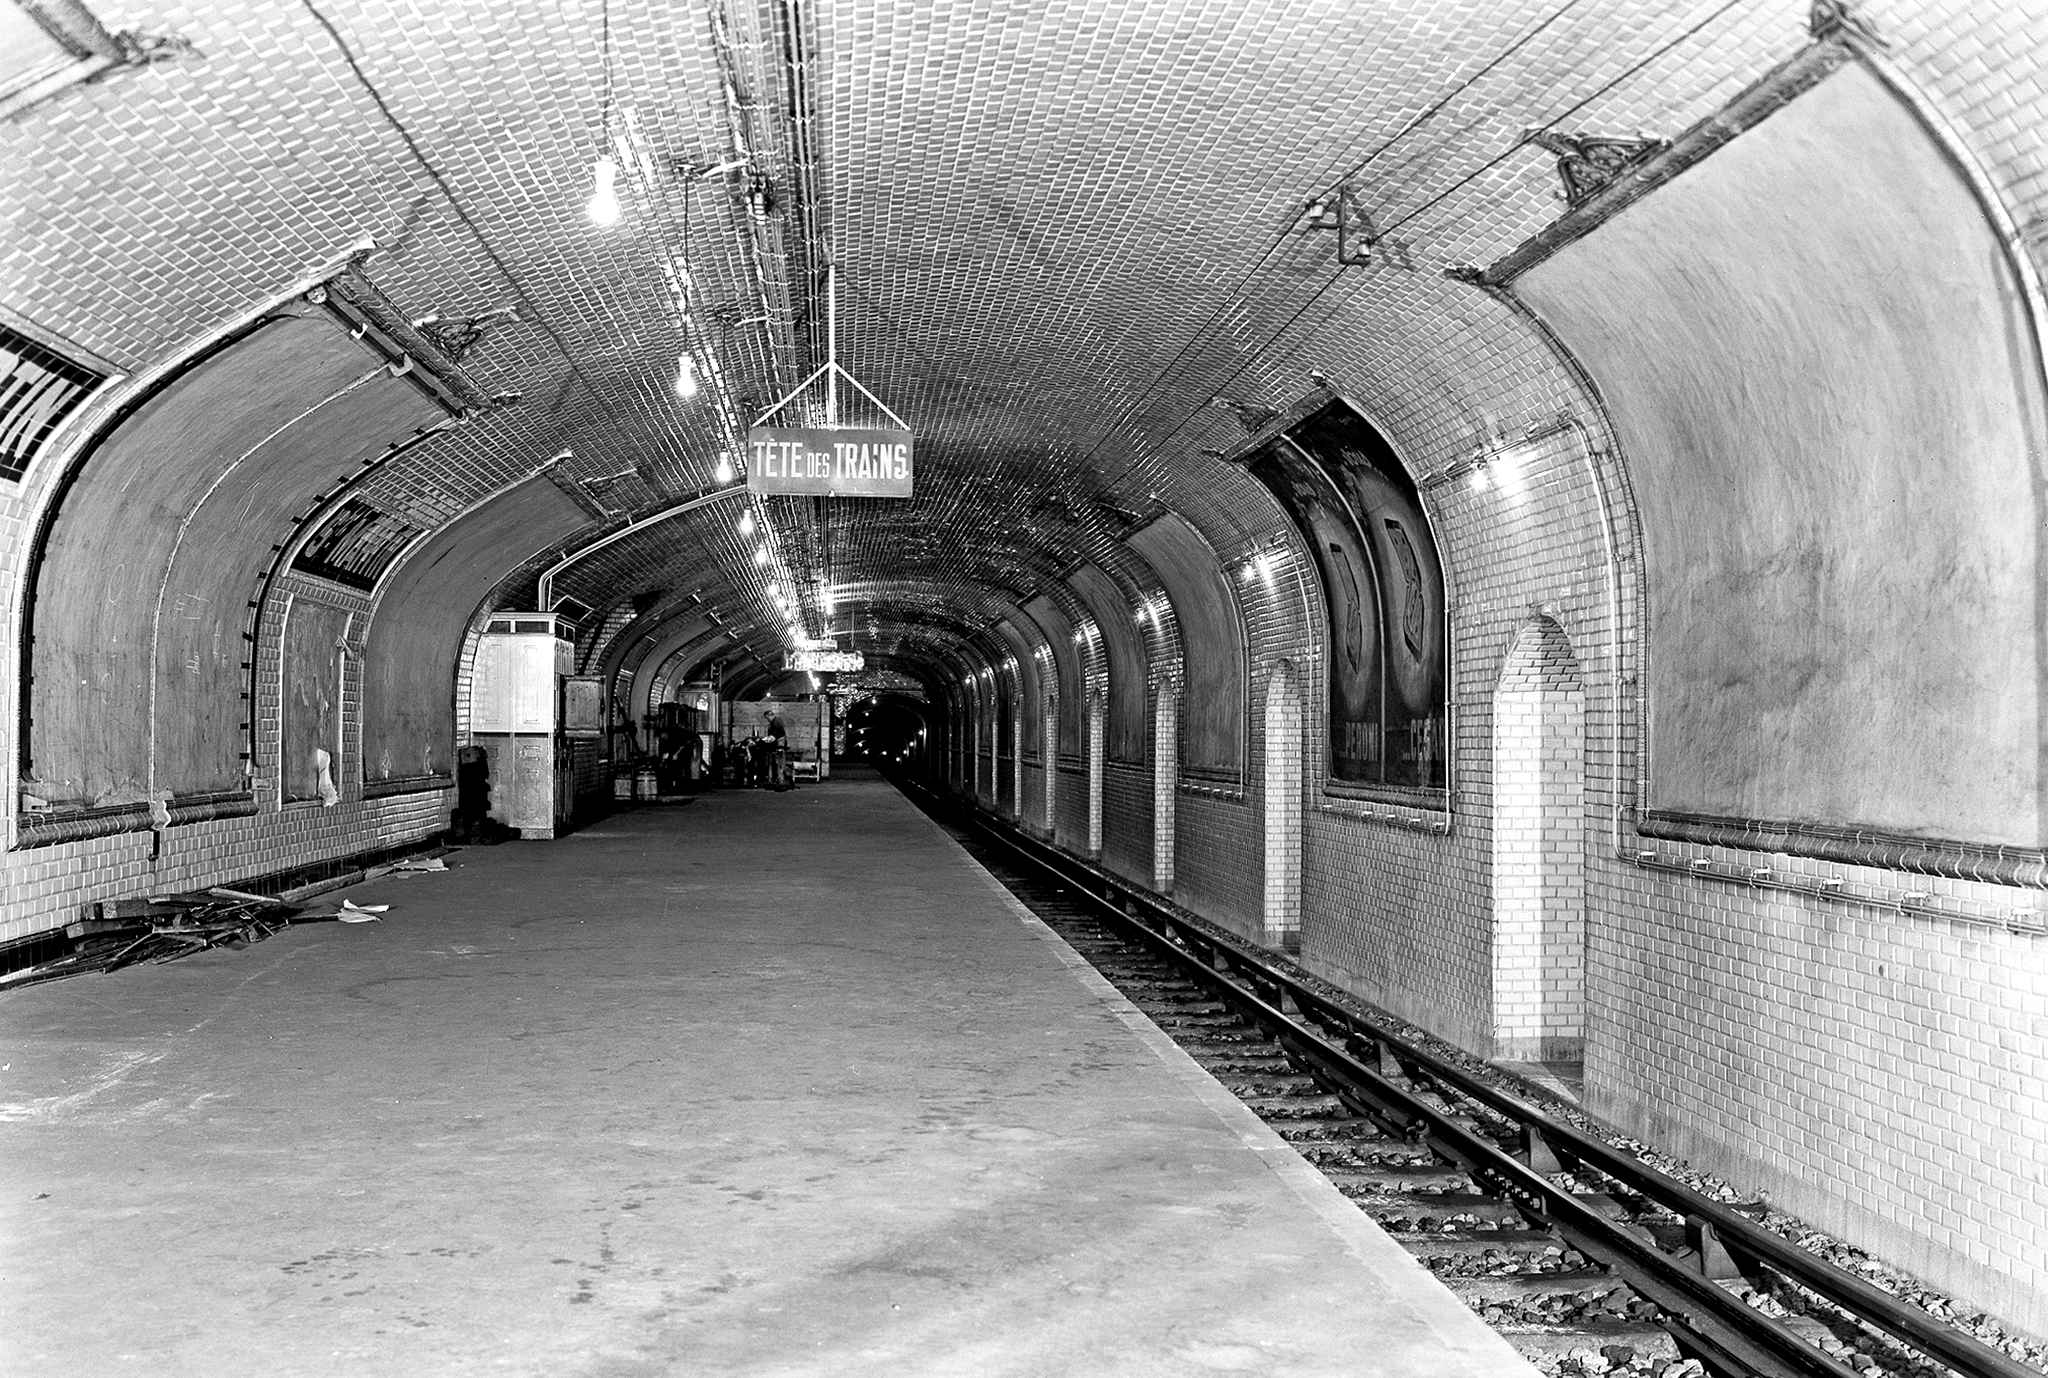 Staţia de metrou Stain-Martin, deschisă în 1928 şi închisă definitiv în 1939. Ridley Scott a filmat aici câteva scene folosite în promovarea filmului Prometheus. Courtesy of RATP